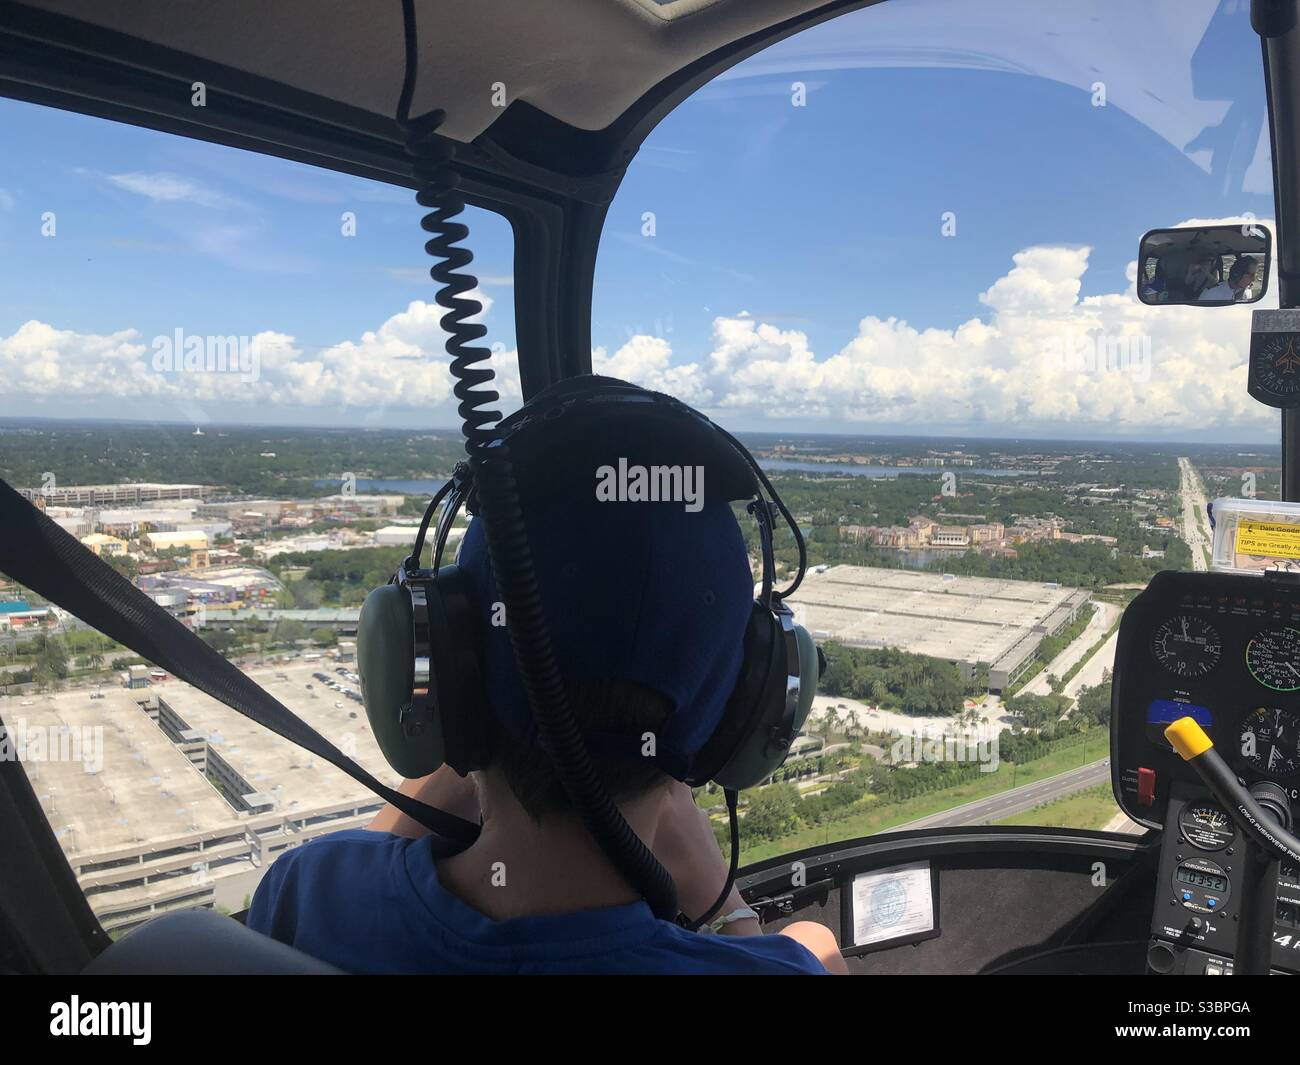 Vista en helicóptero sobre Orlando Foto de stock